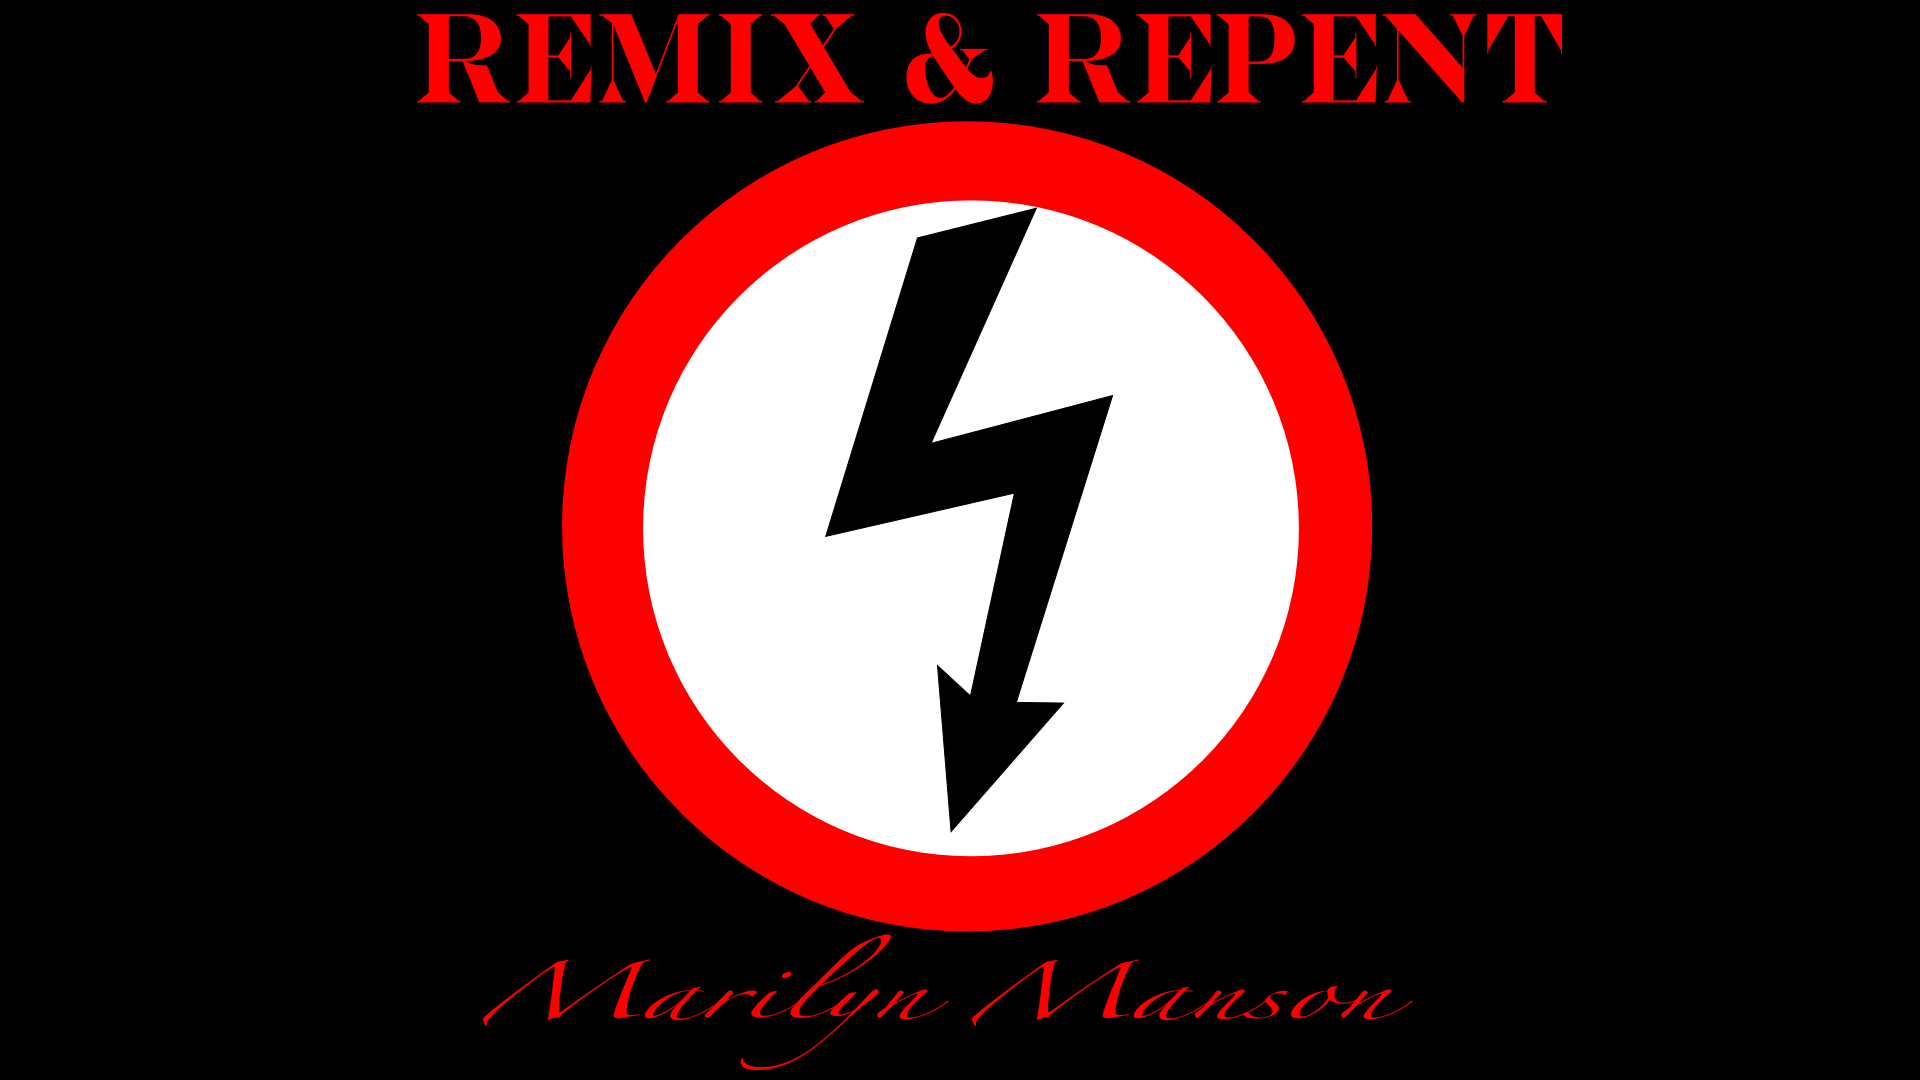 Heavy Metal Industrial Metal Marilyn Manson 1920x1080